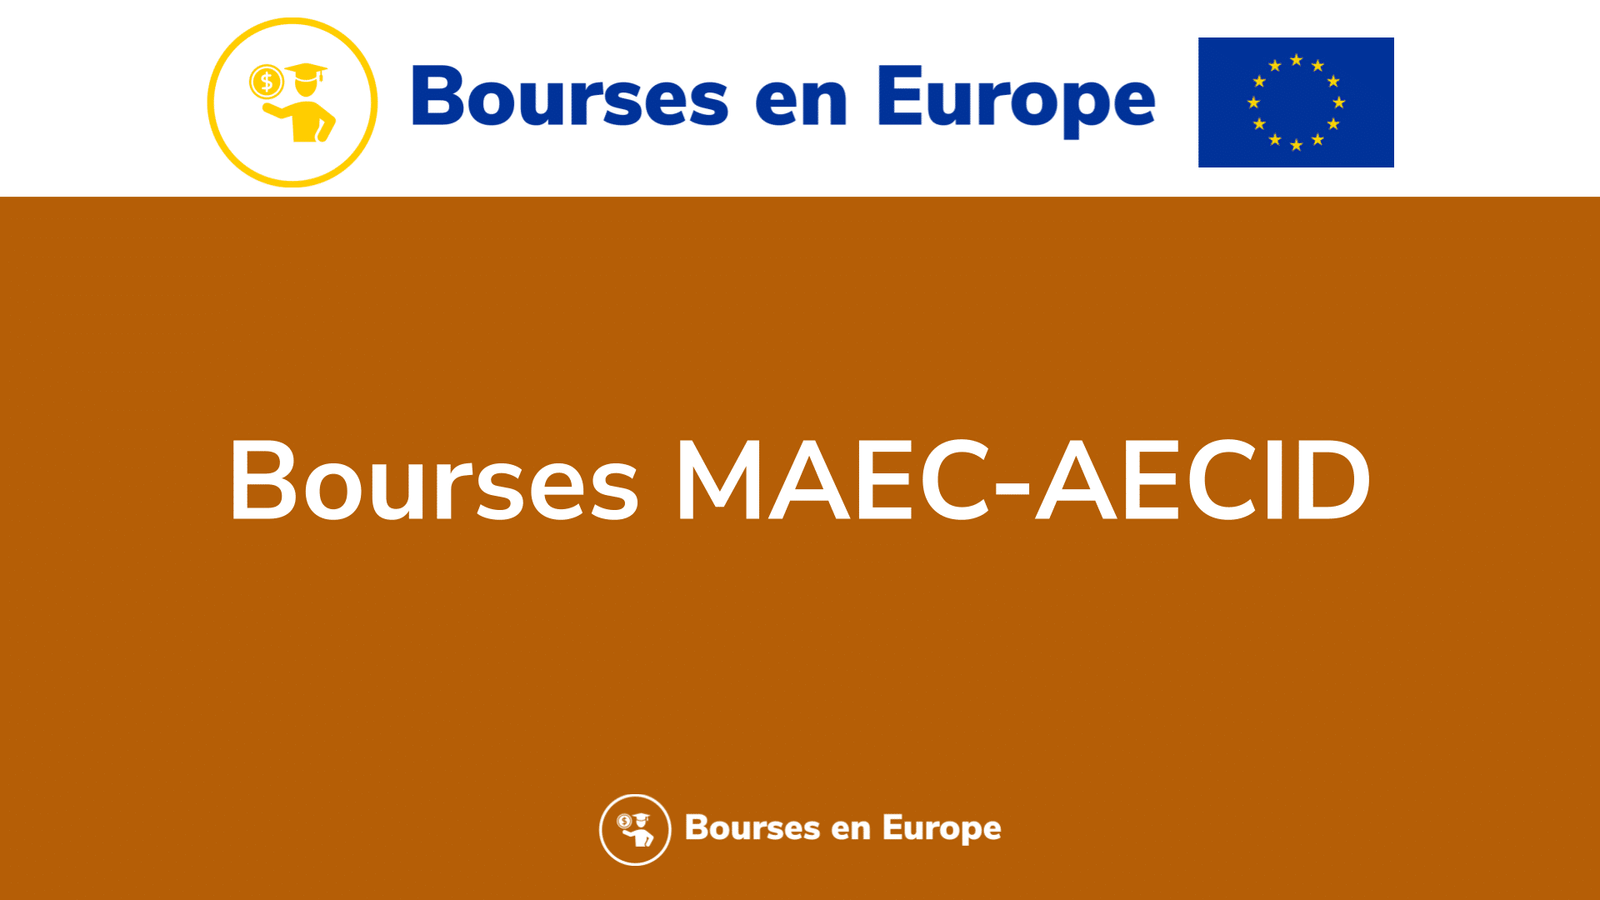 Bourses MAEC-AECID